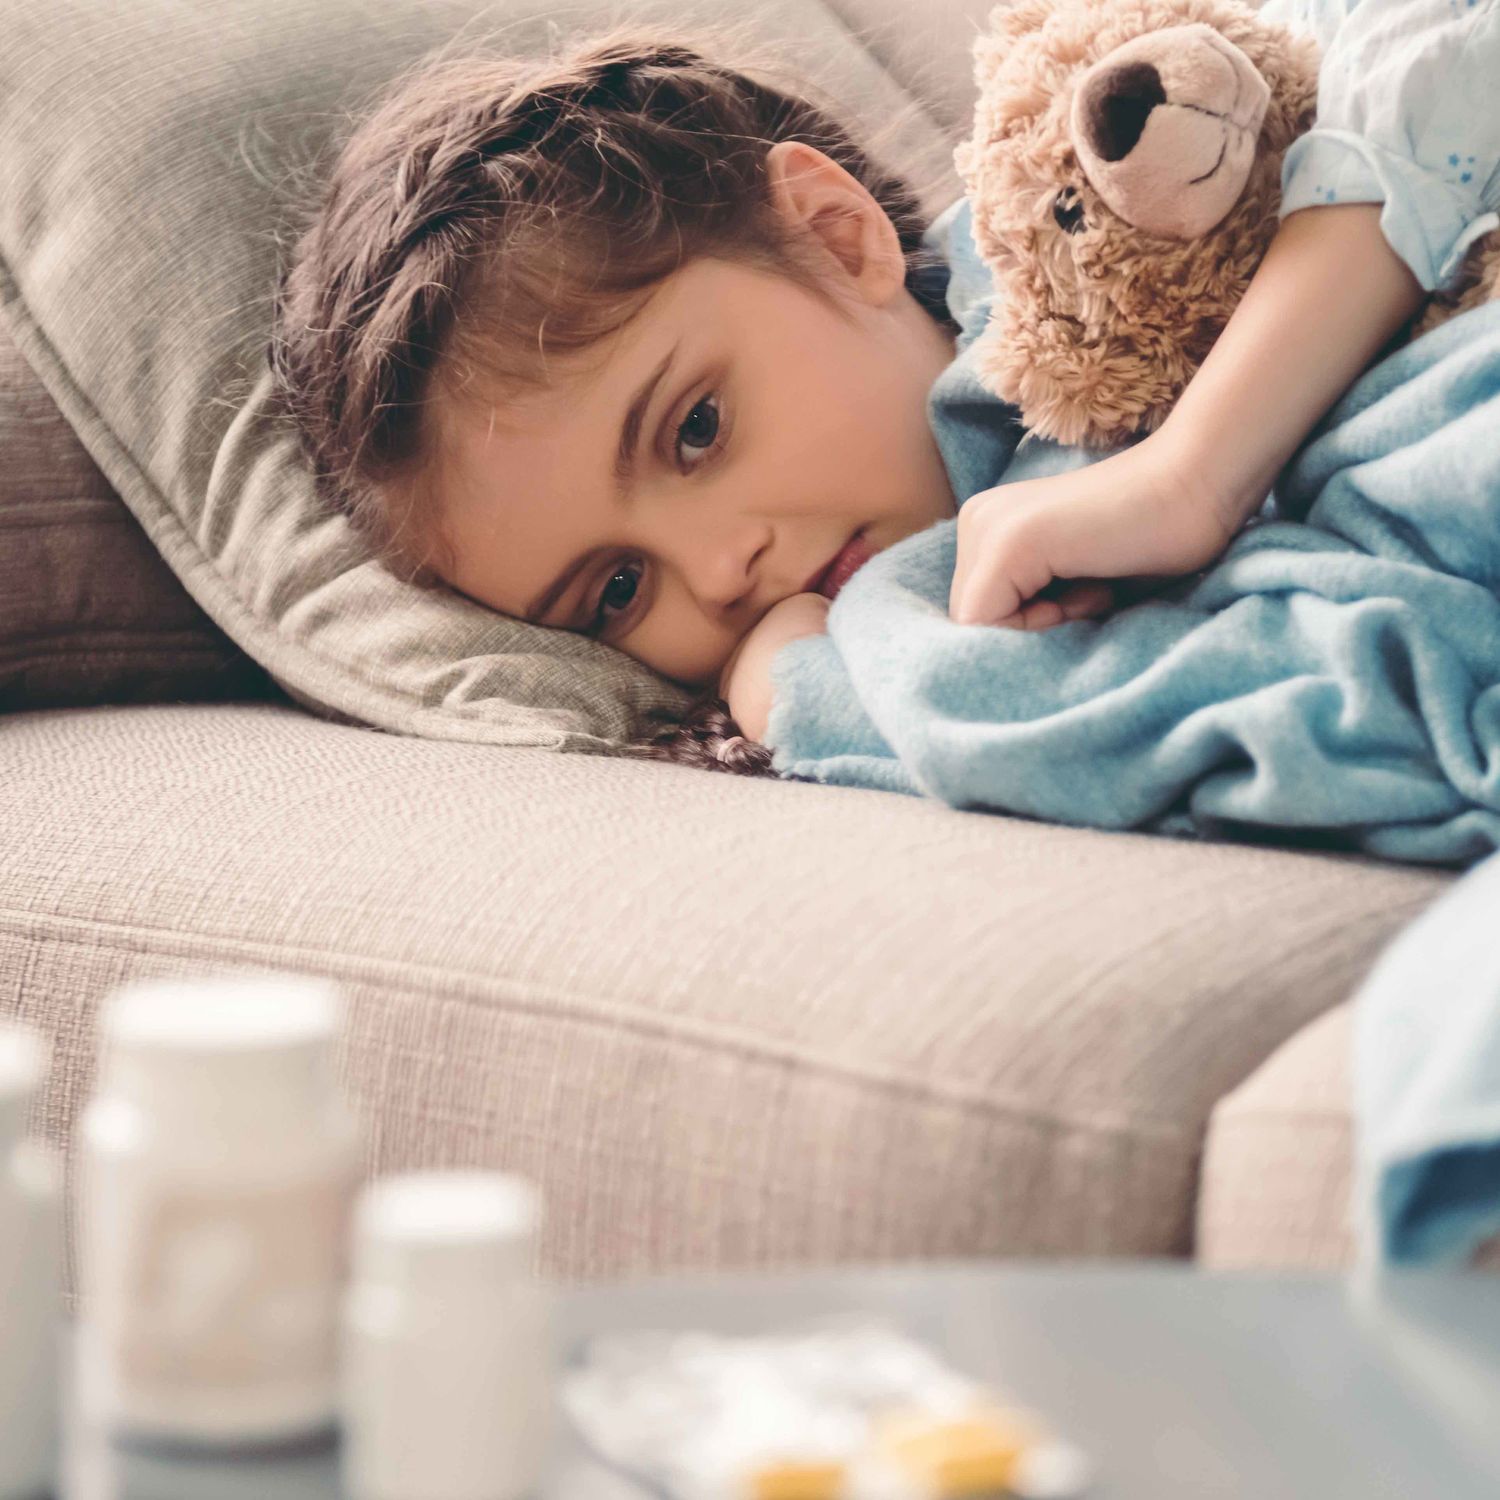 Ein Foto von einem kranken, auf der Couch liegendem Kind.